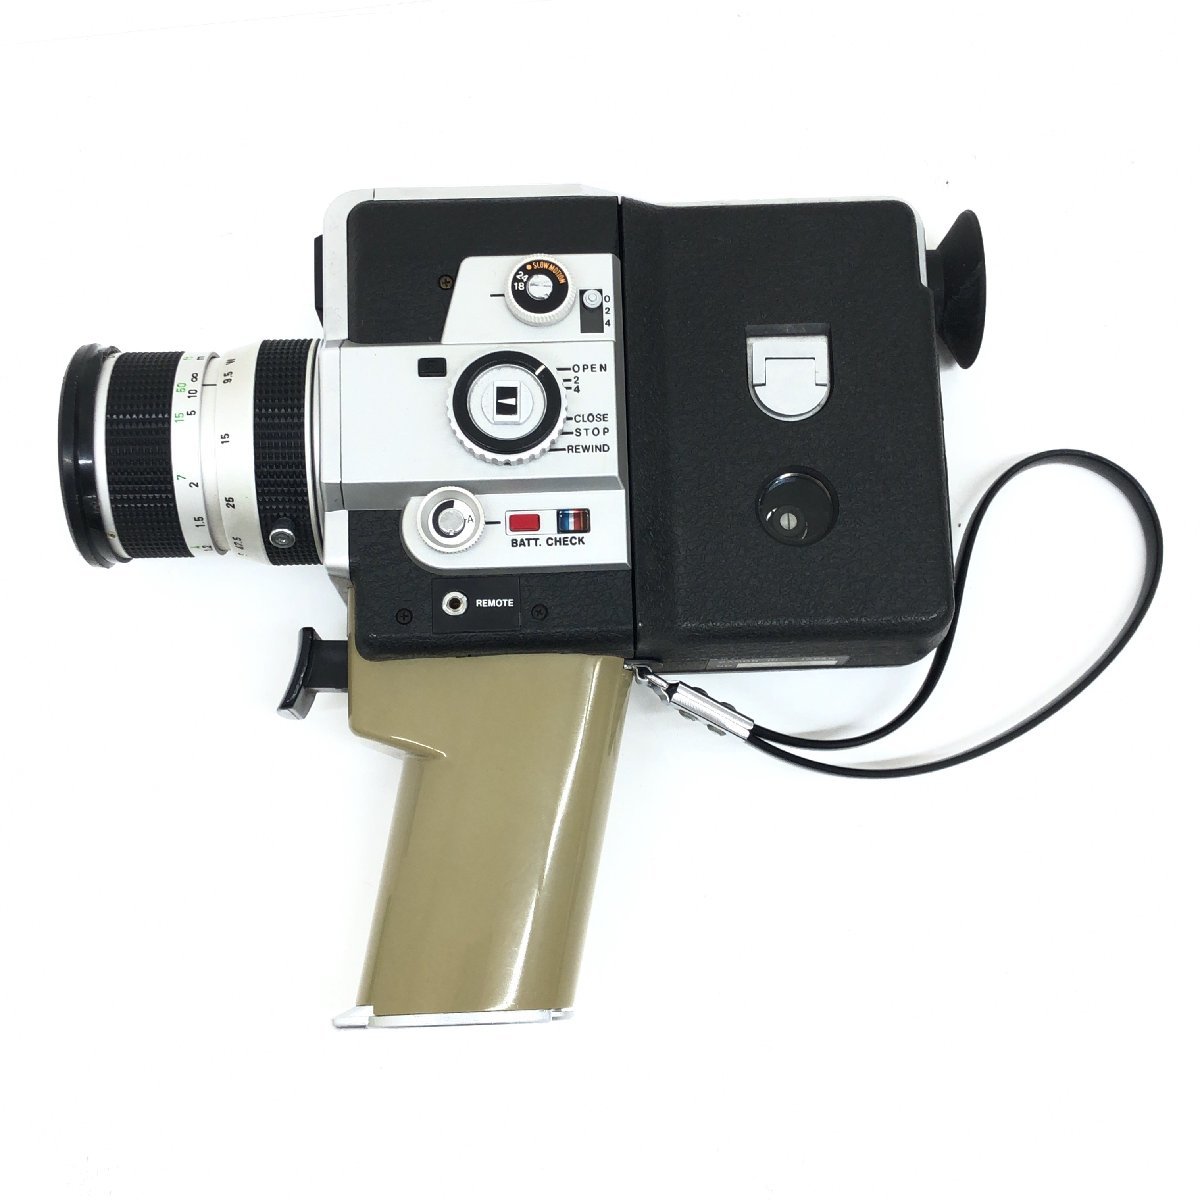 ◇Canon キャノン Single-8 518SV 8mm フィルムカメラ ビデオカメラ